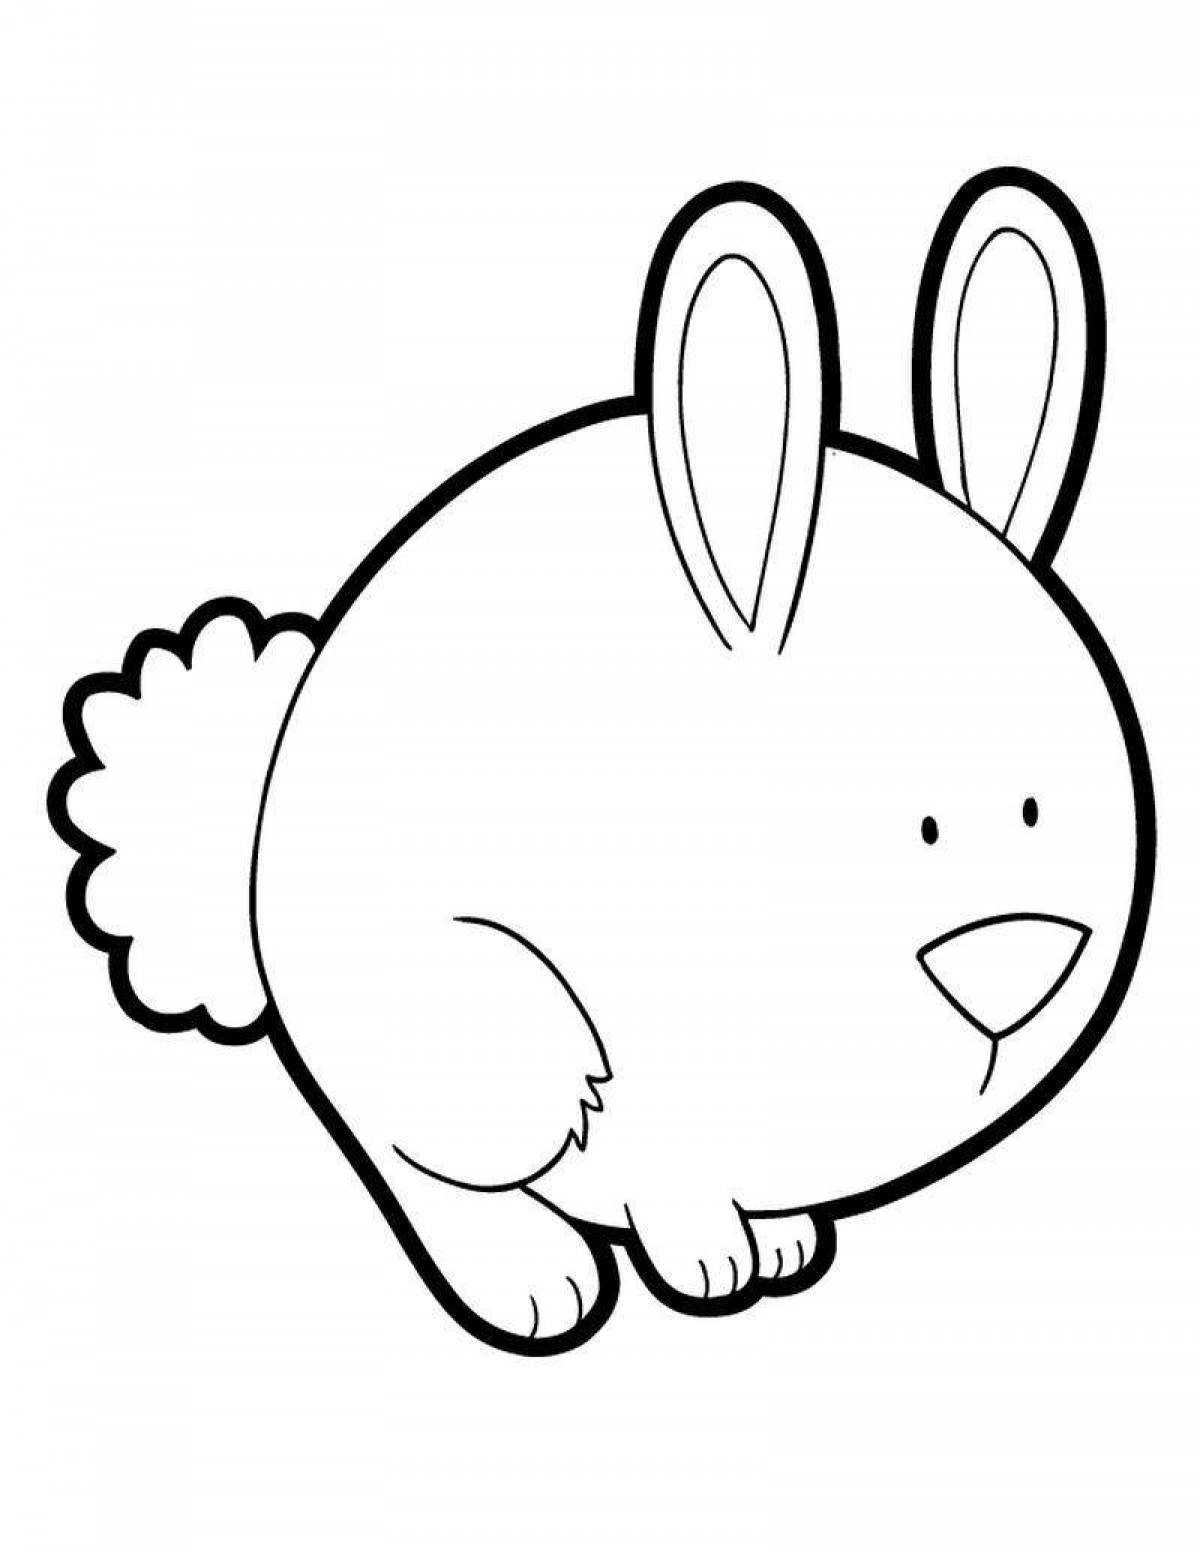 Чудесная страница раскраски buffy bunny